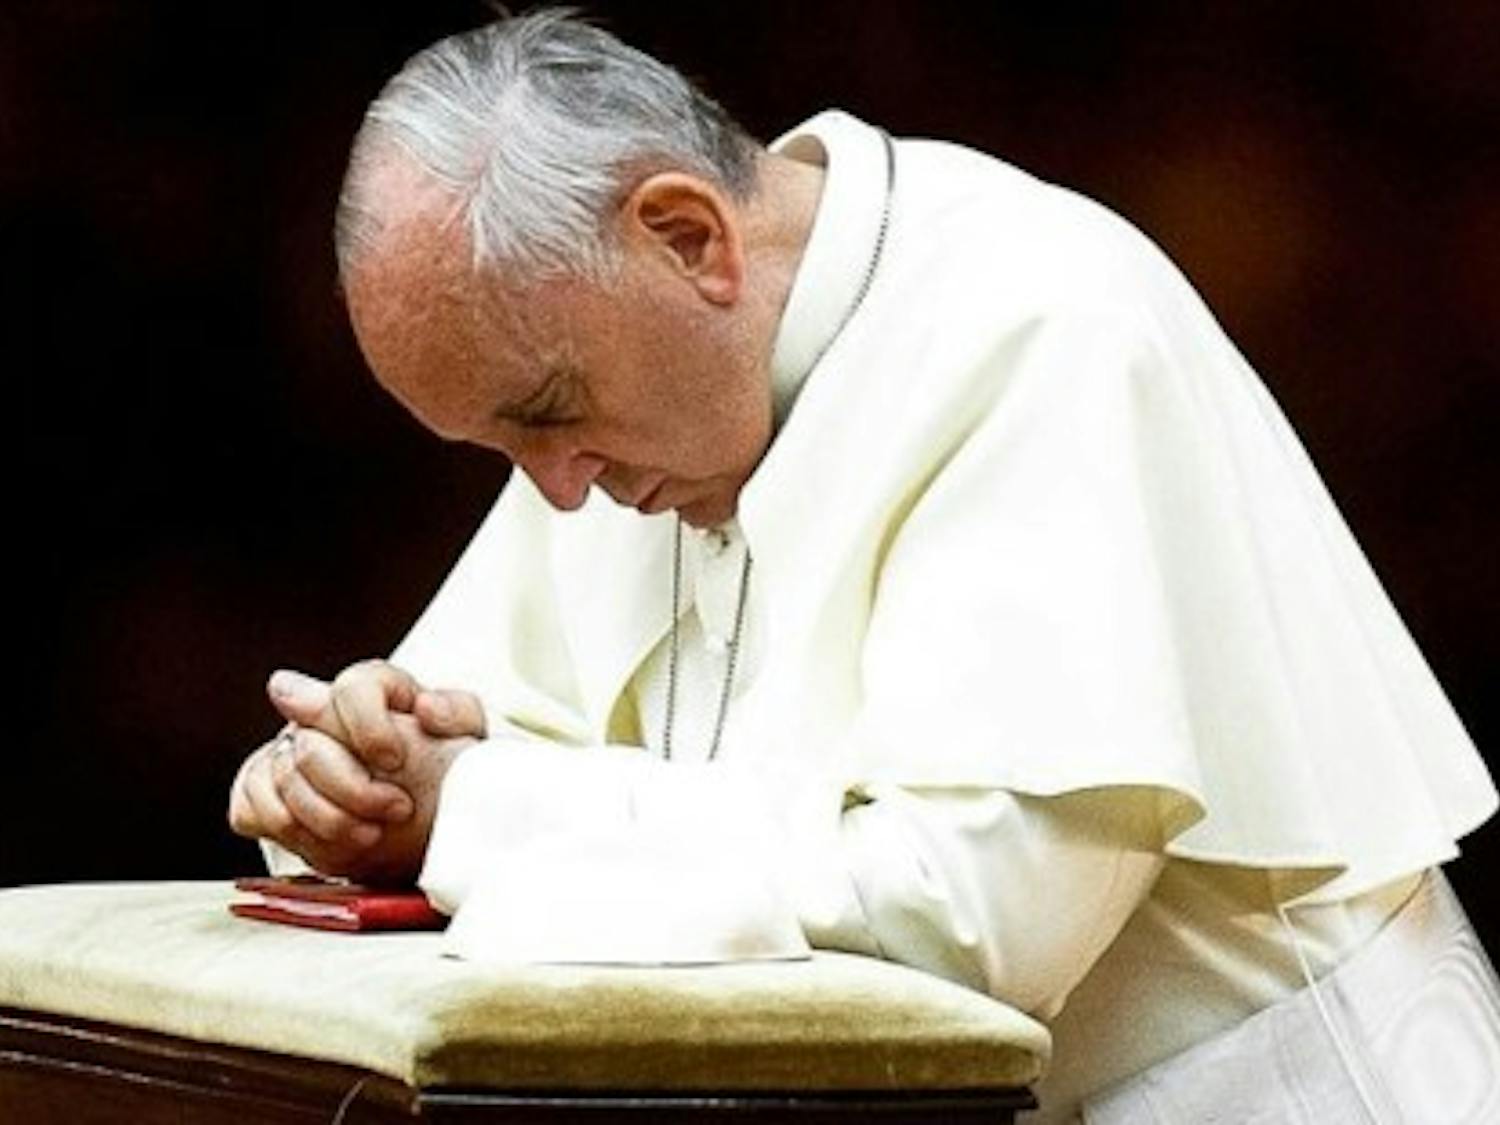 web3-pope-francis-praying-knees-instagram-east-news.jpg